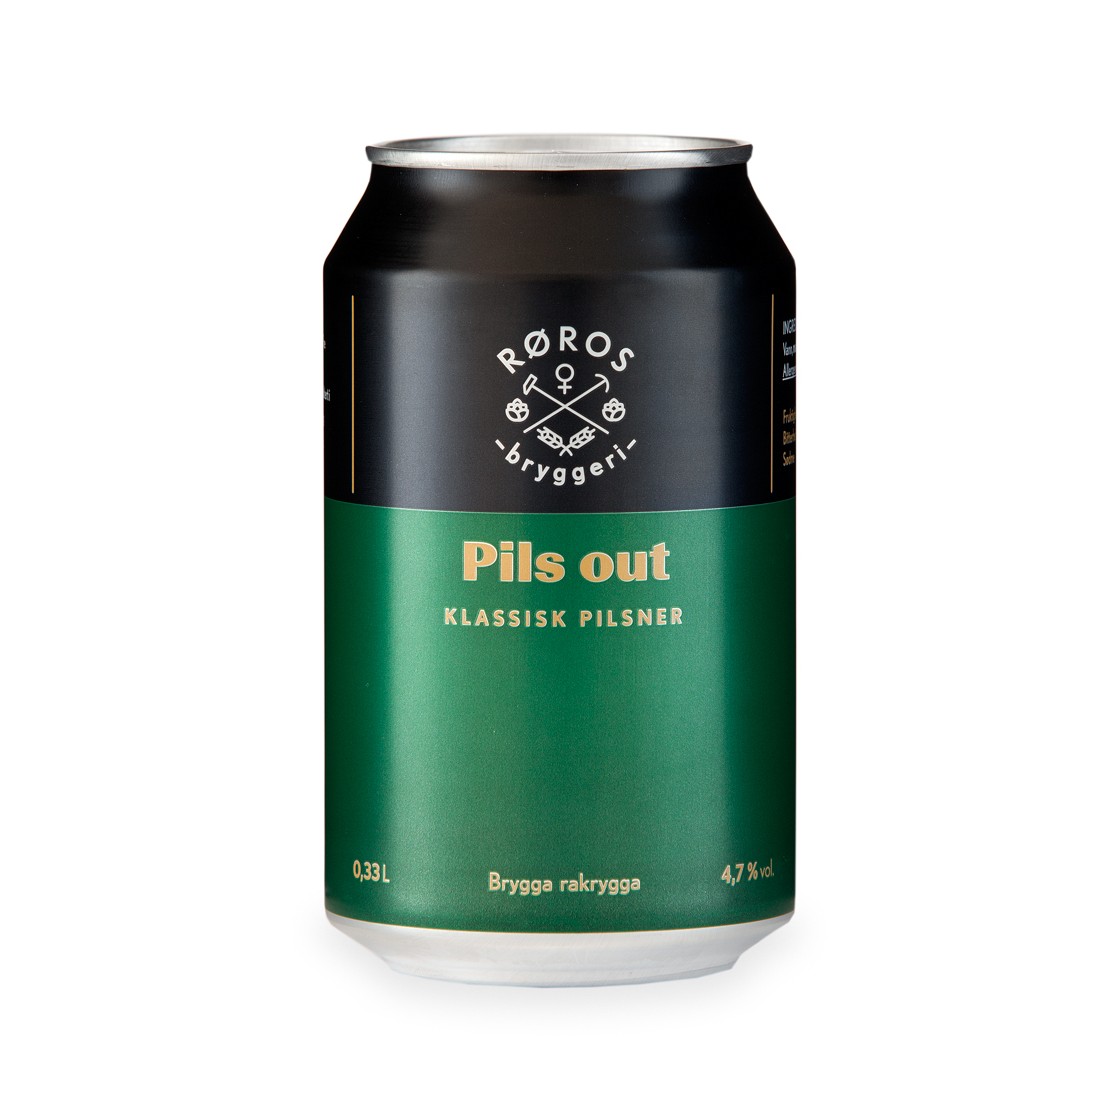 Pils out 4,7% 24/0,33 ltr boks røros bryggeri